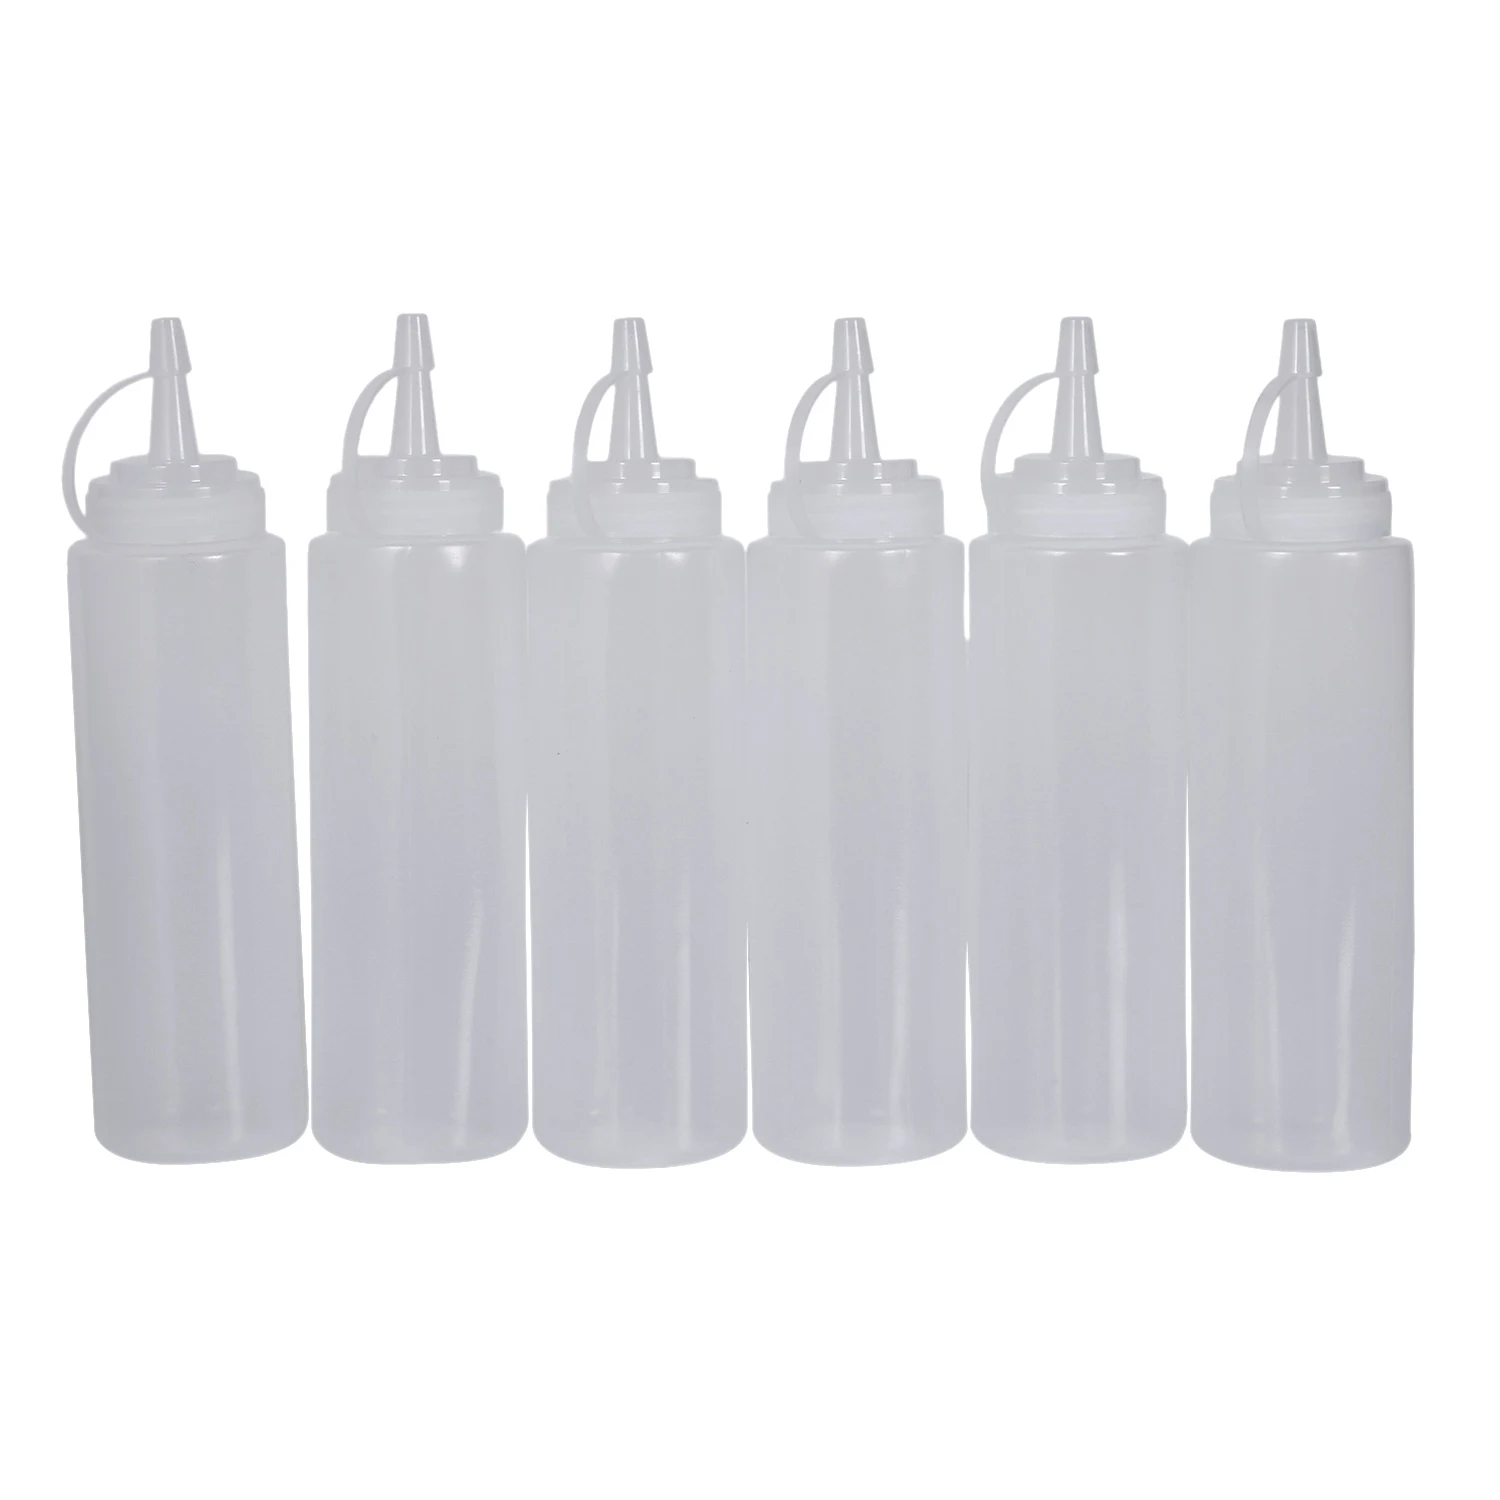 6X Прозрачных Белых Пластиковых Бутылок для Выжимания Соуса, Кетчупа и масла 8 унций